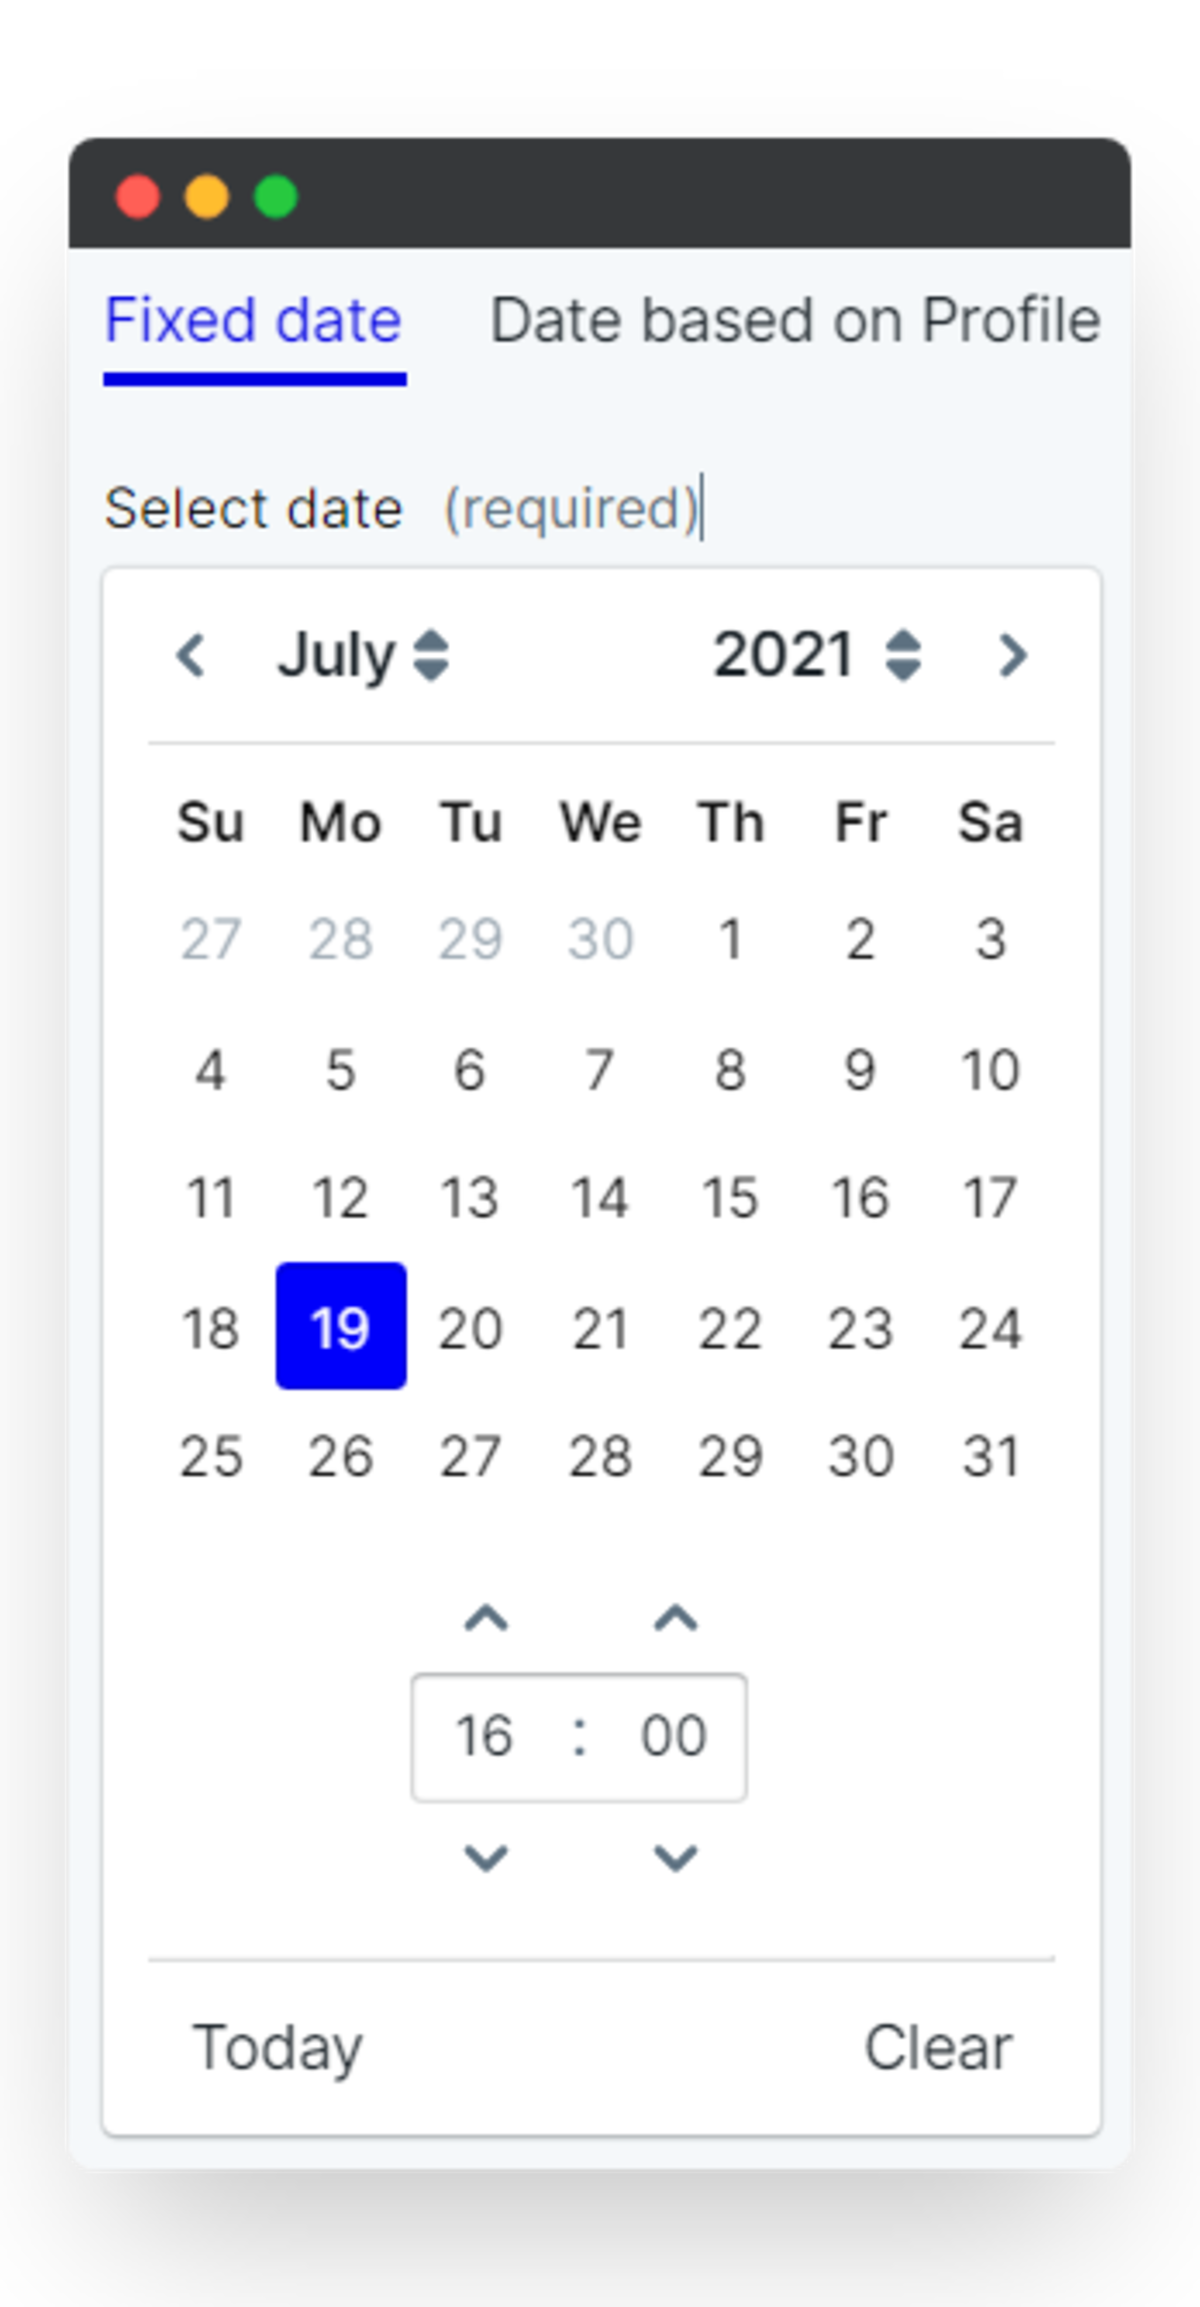 schedule - fixed date